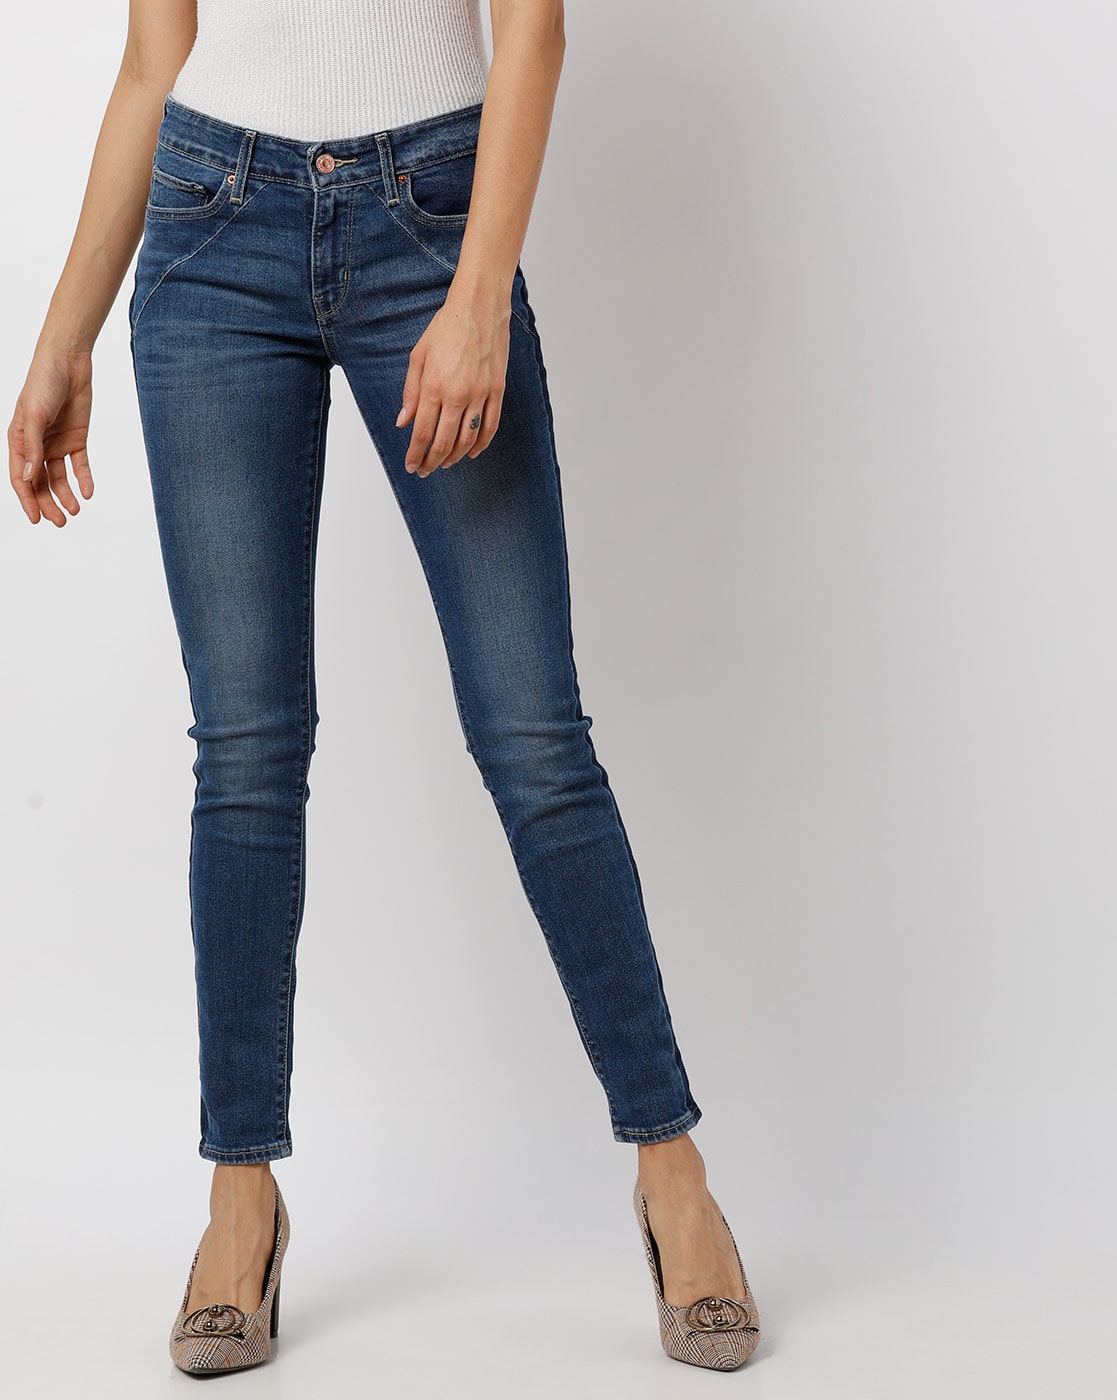 levis denim jeans womens